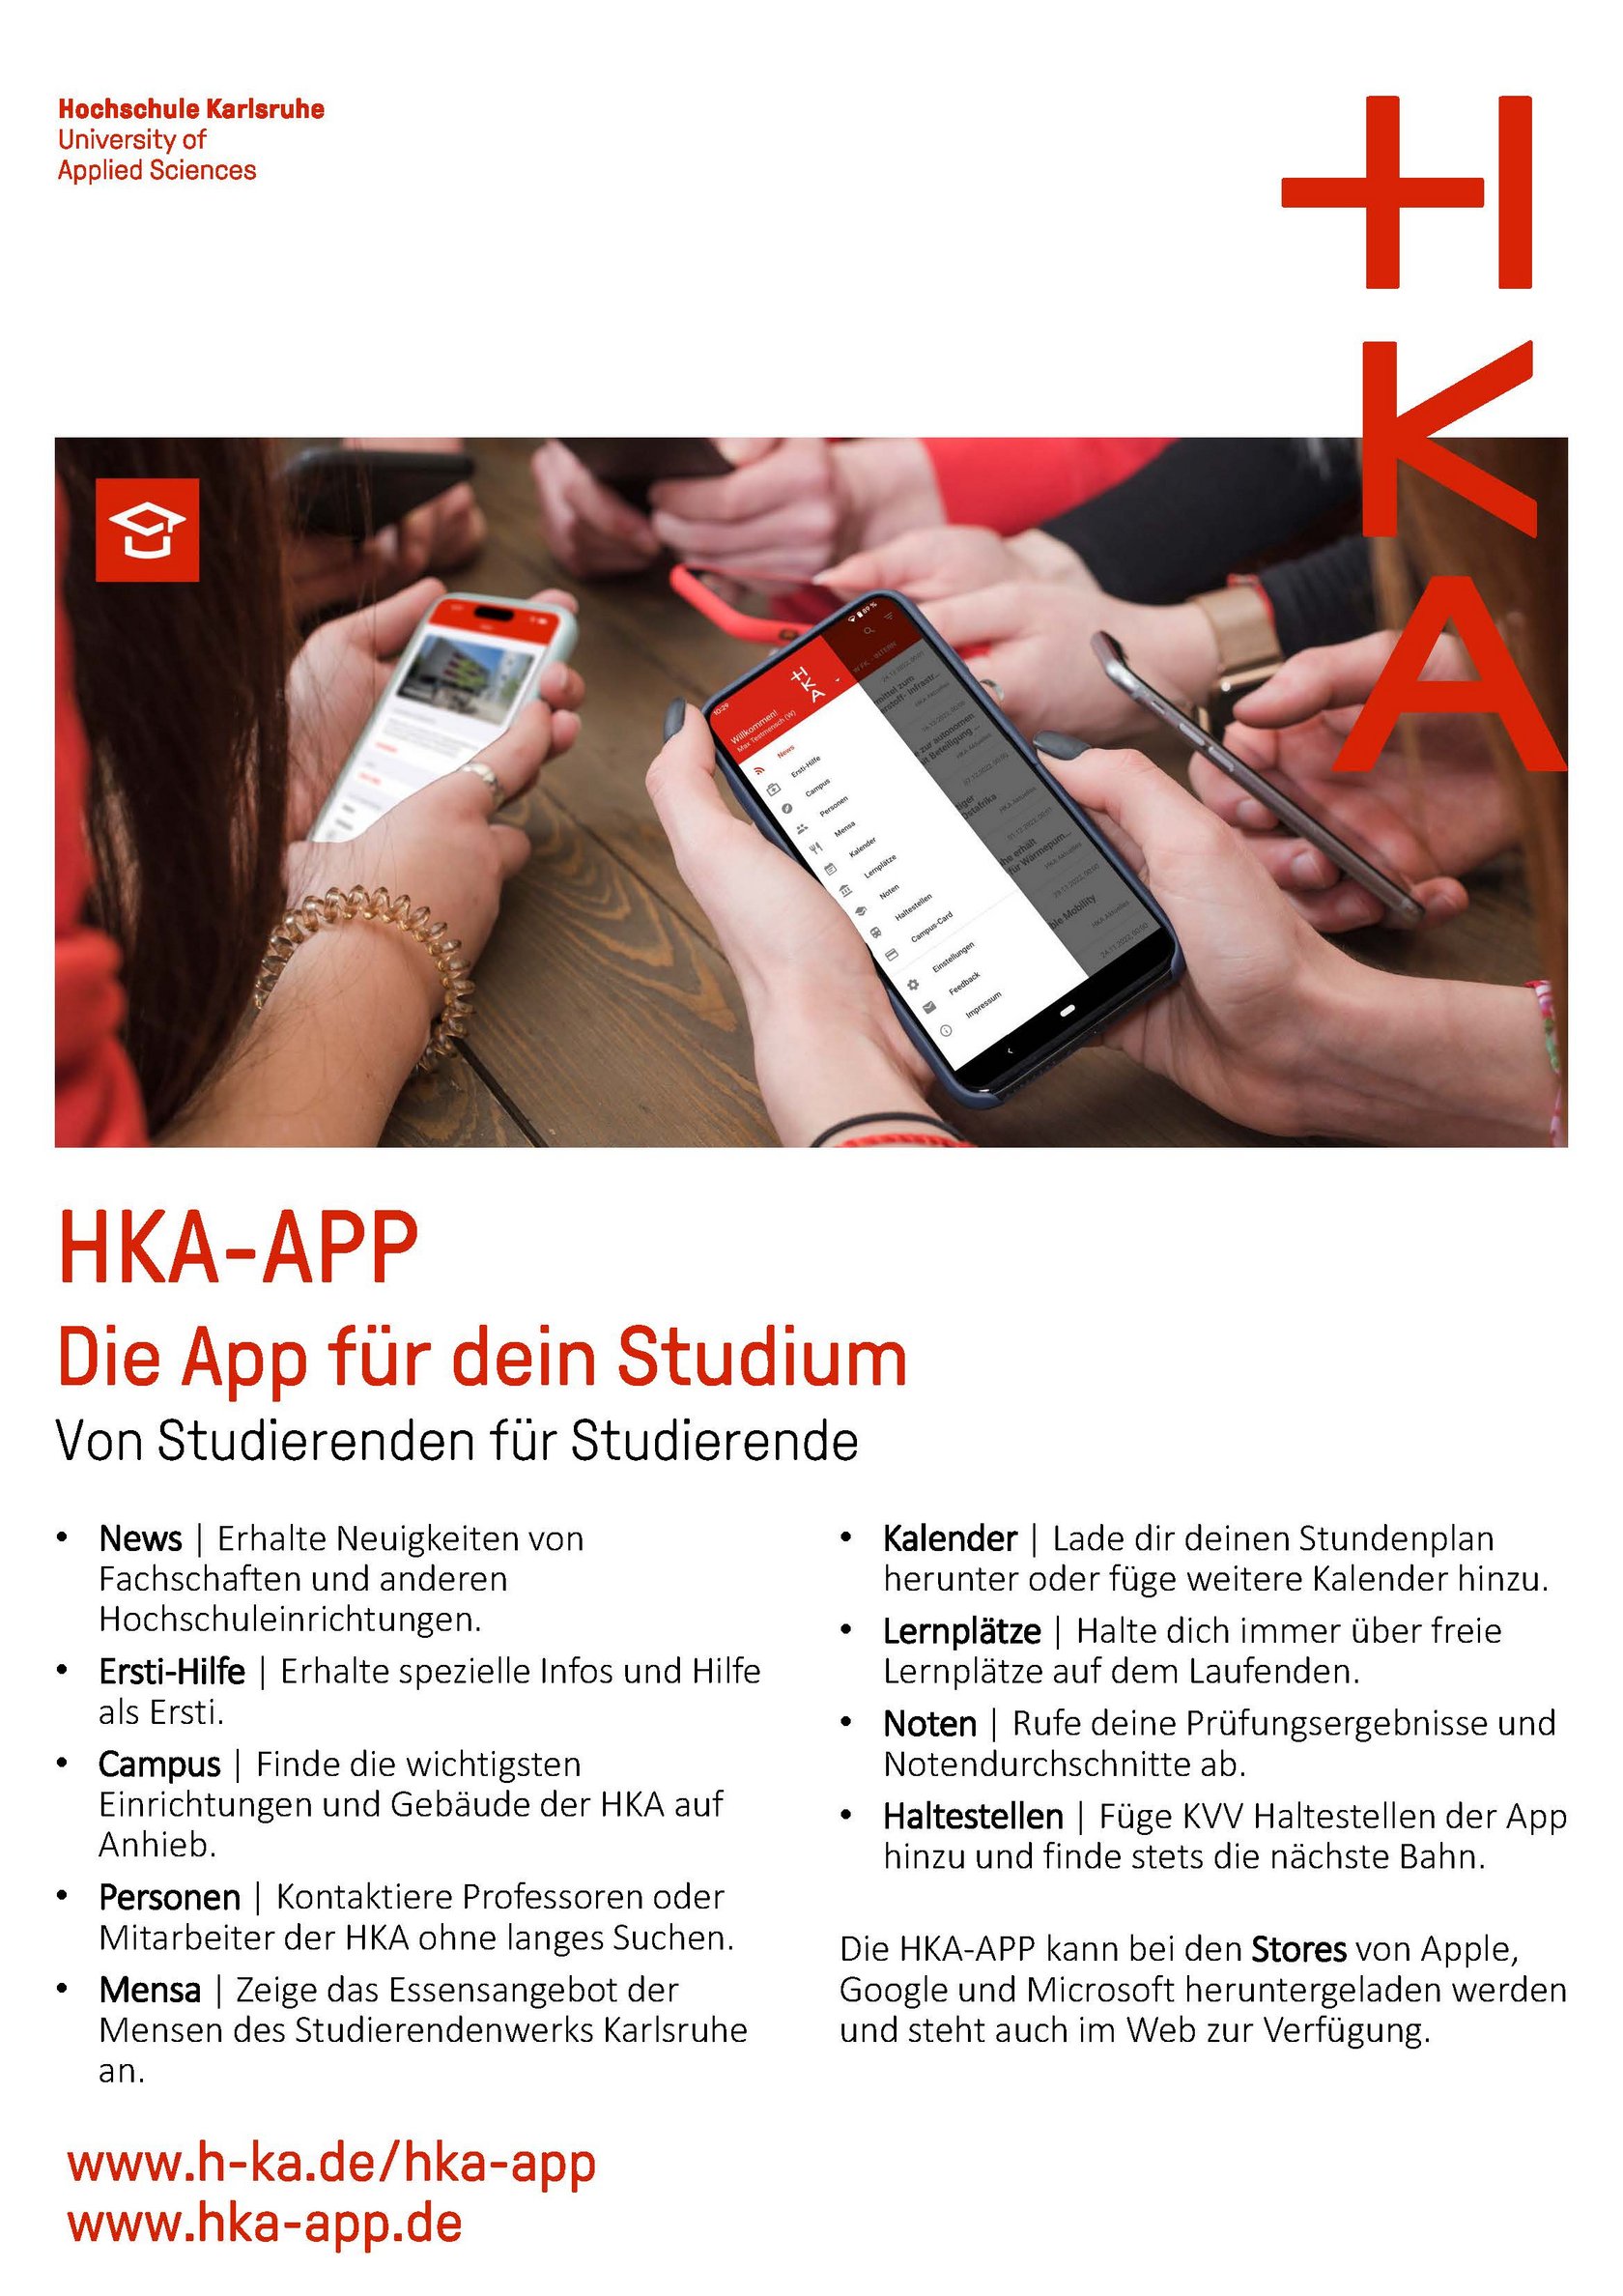 Ein Informationsflyer der HKA-App